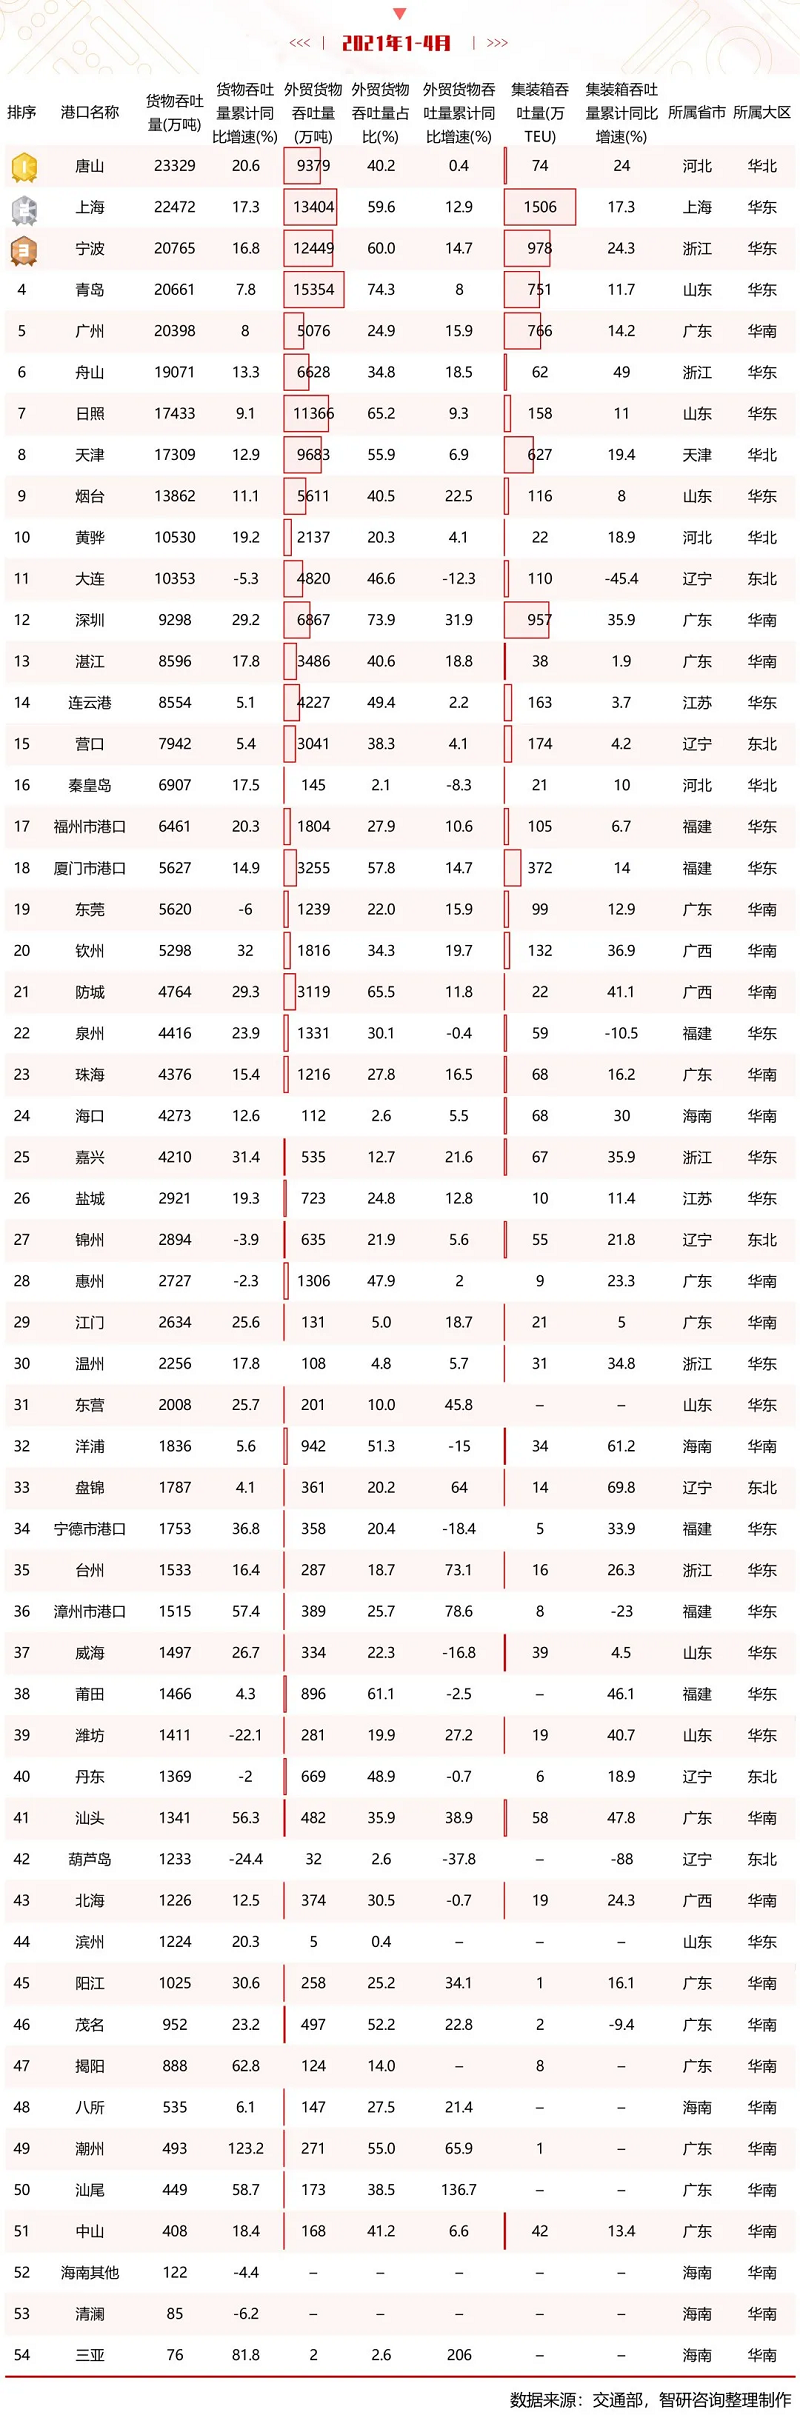 2021年1-4月中国沿海港口货物吞吐量排行榜